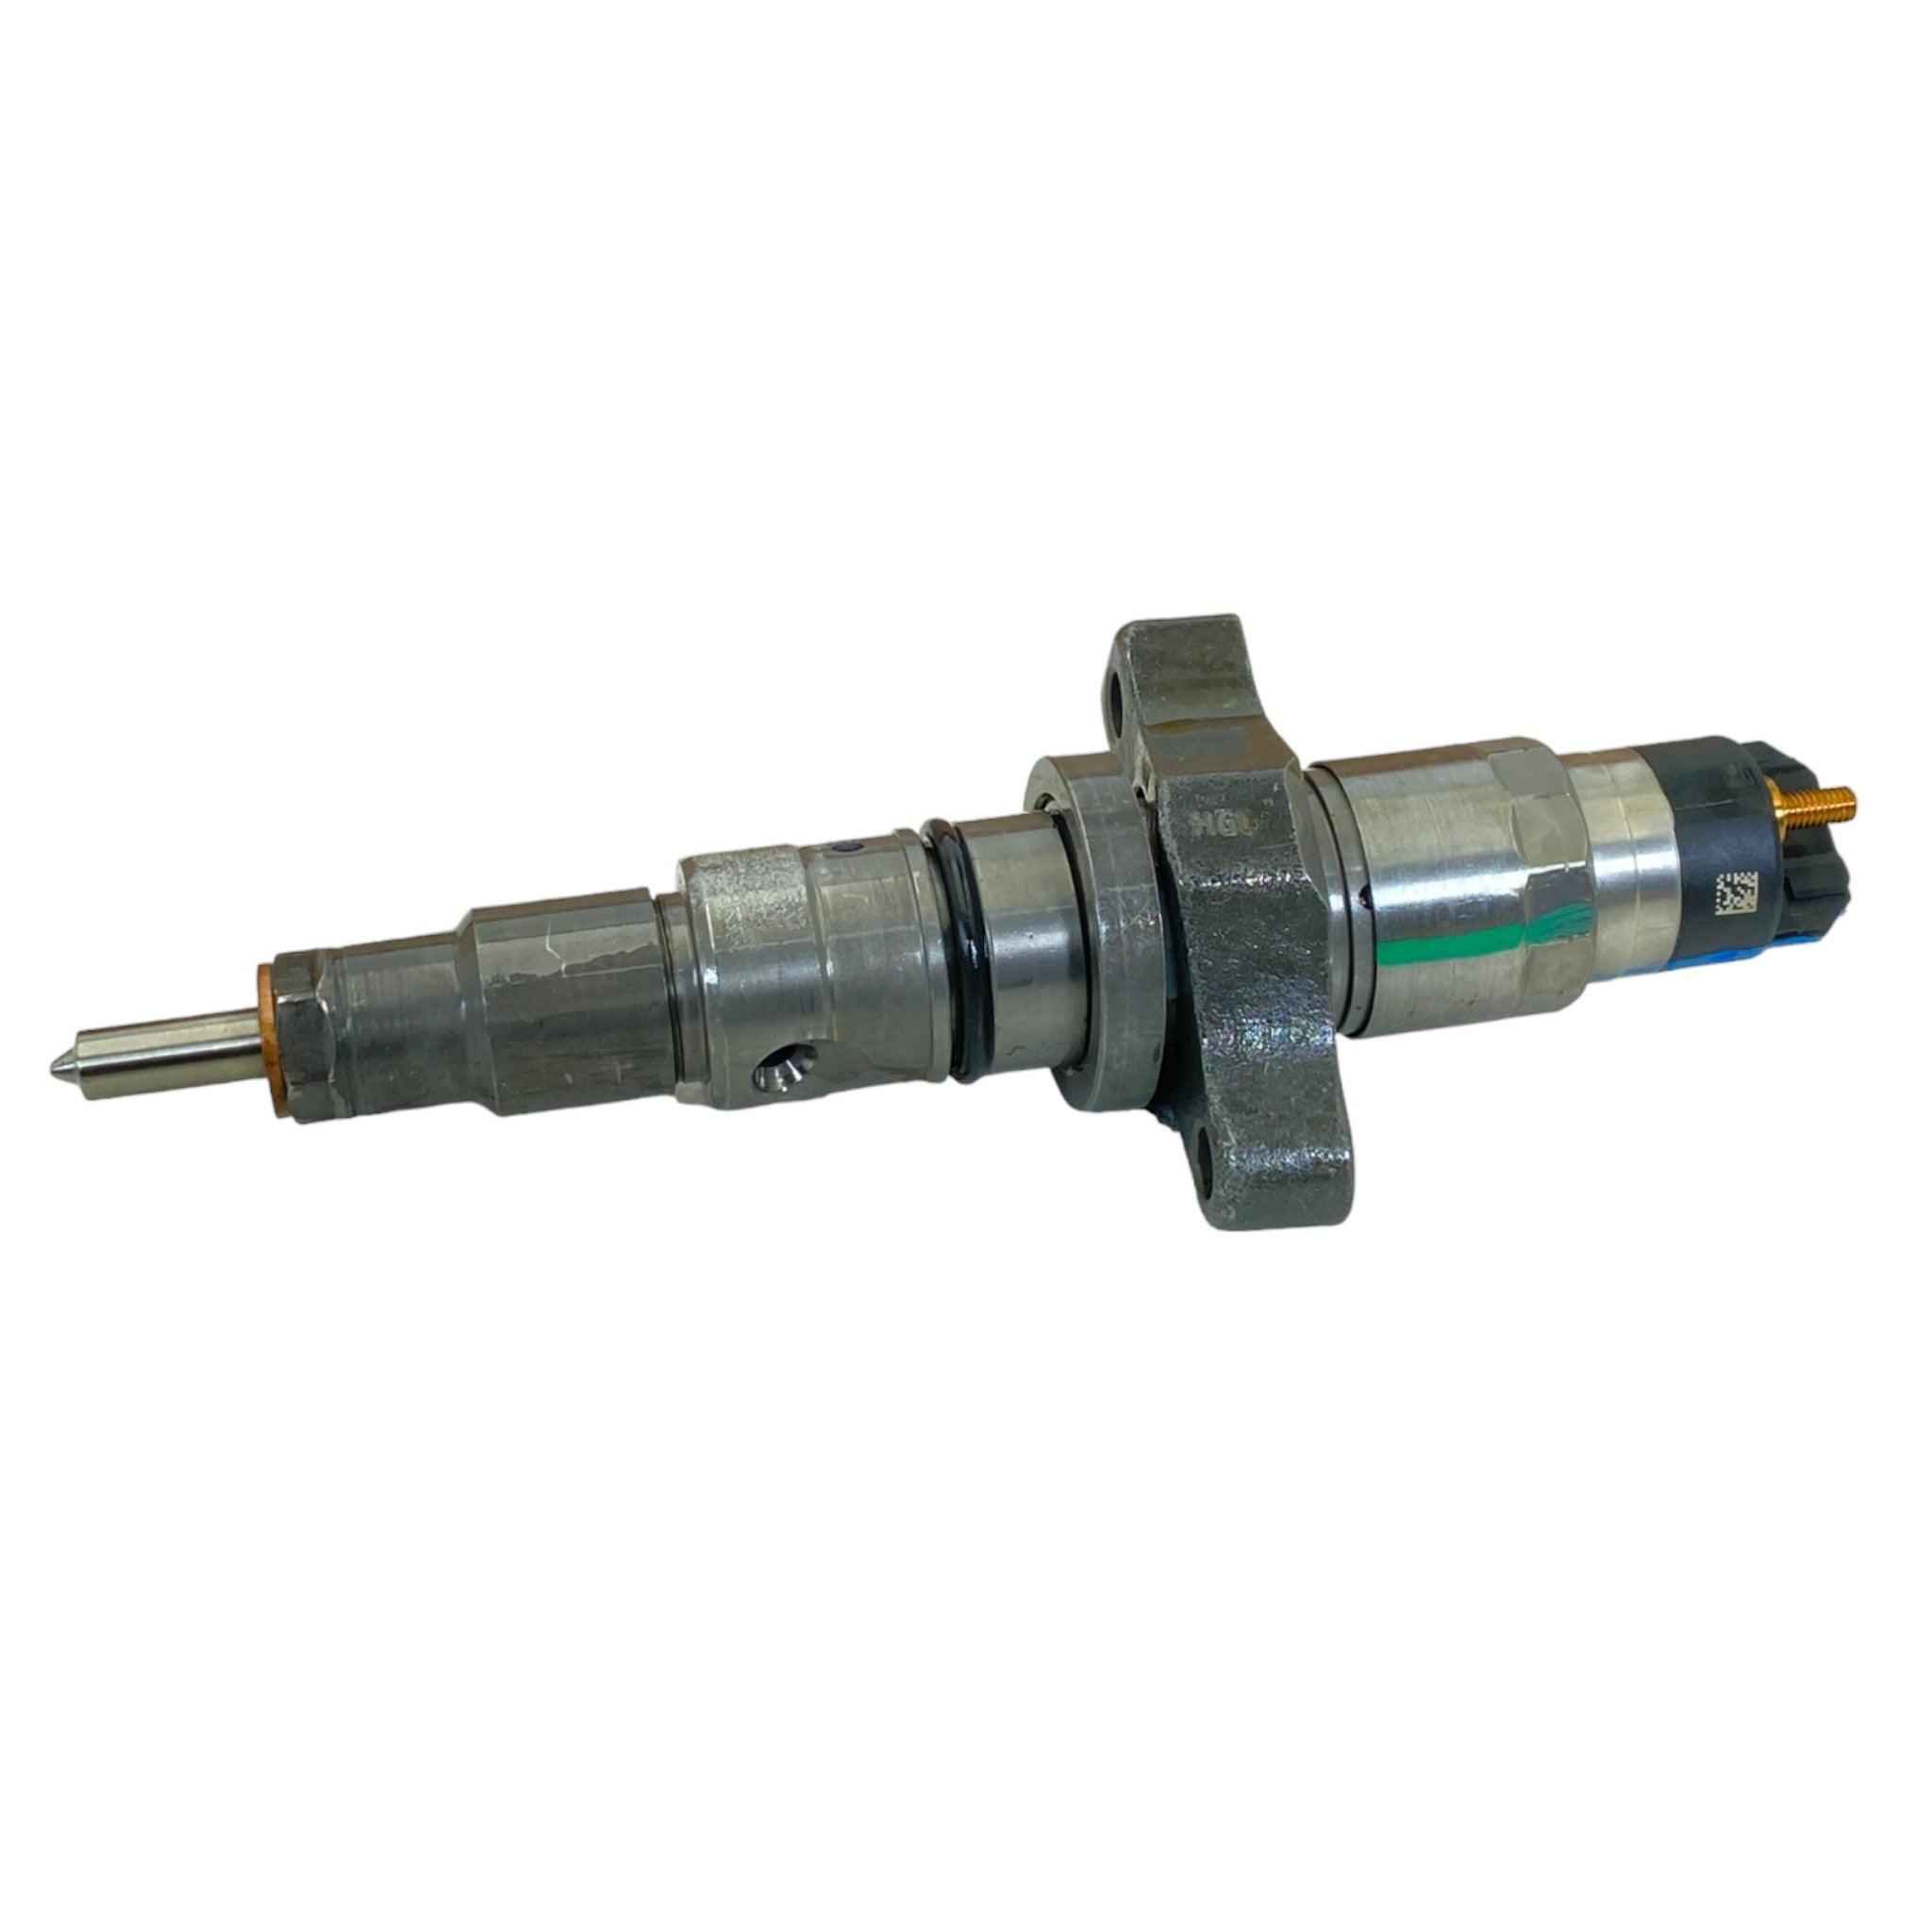 R8310746Aa Genuine Mopar Fuel Injectors Set Of 6 For 2004-2009 5.9L - ADVANCED TRUCK PARTS